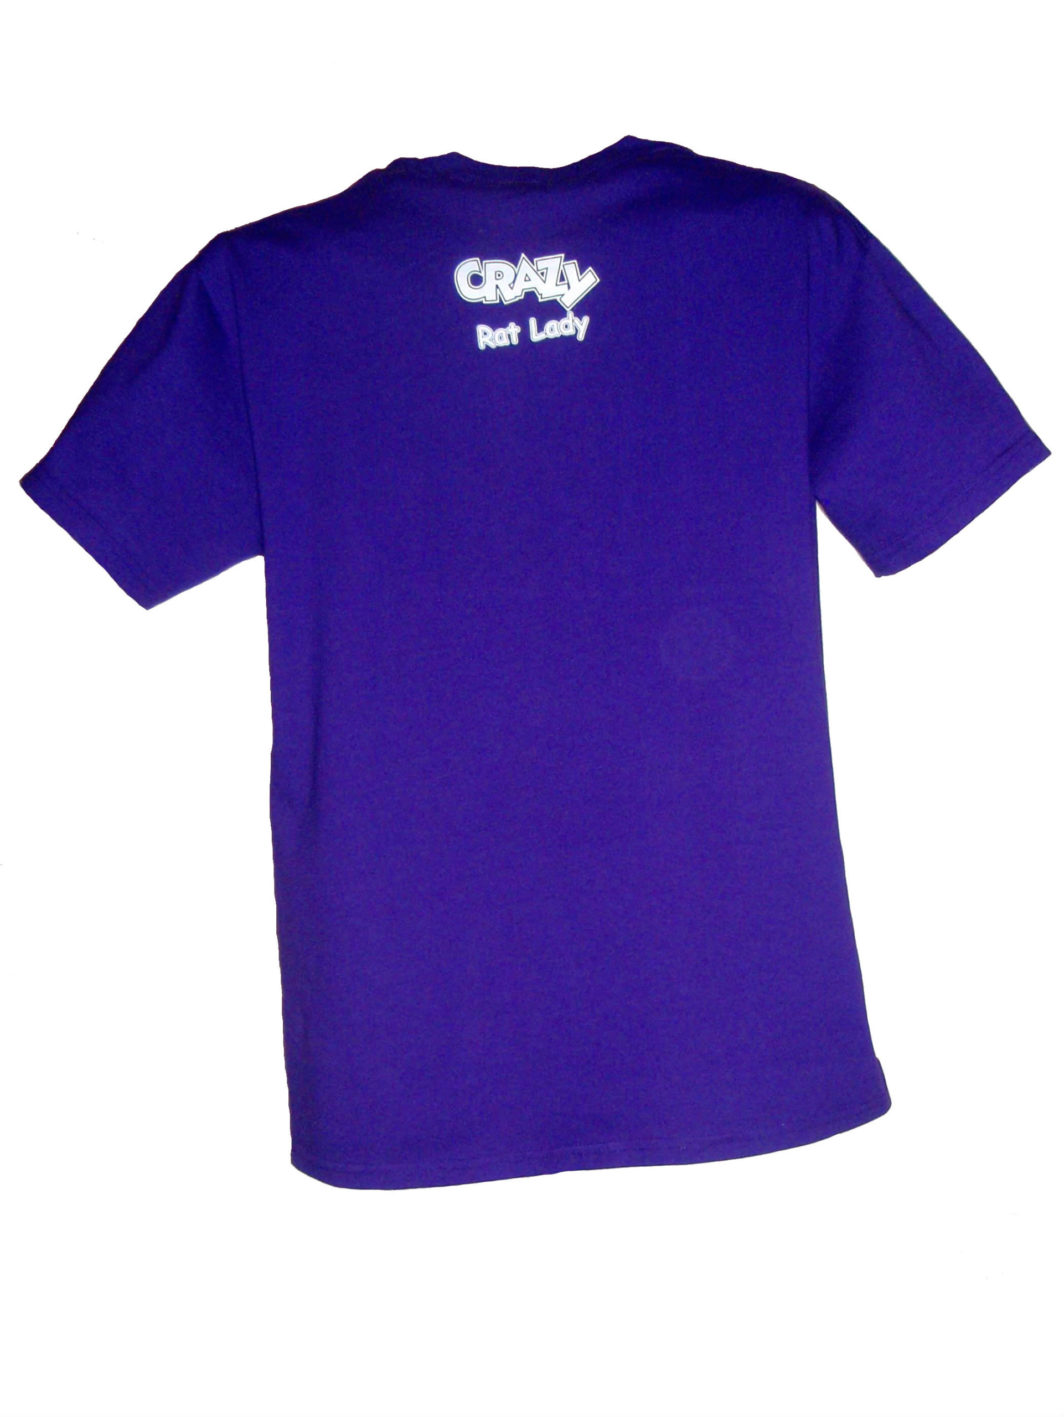 Crazy Rat Lady T-Shirt Purple Back